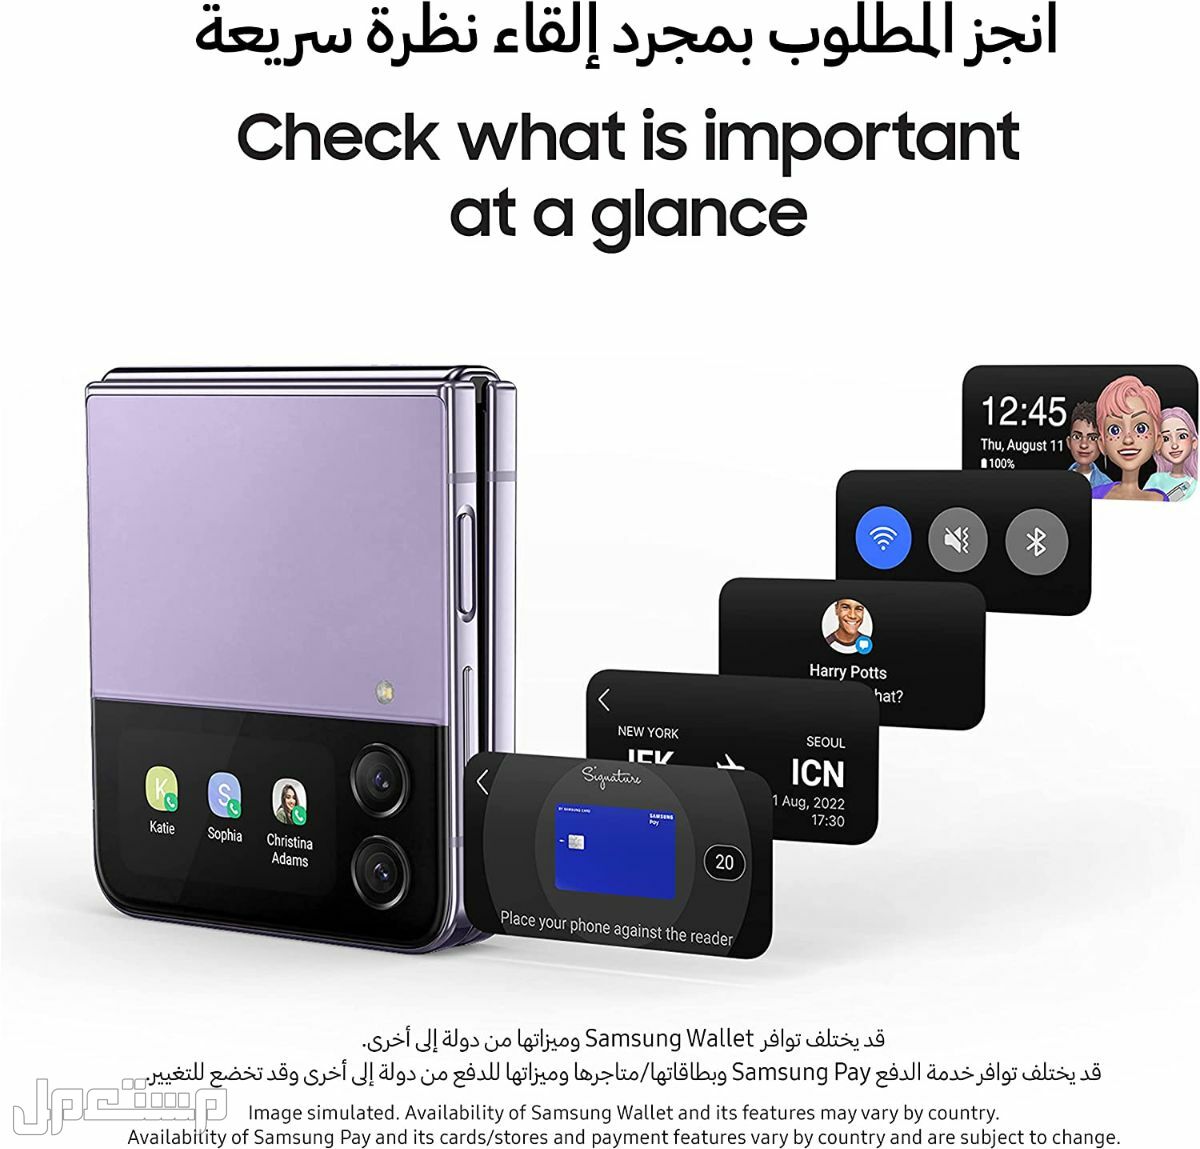 جوال جلاكسي: تعرف على مواصفات وأسعار وأهم مميزات جوال جلاكسي في تونس هاتف جلاكسي